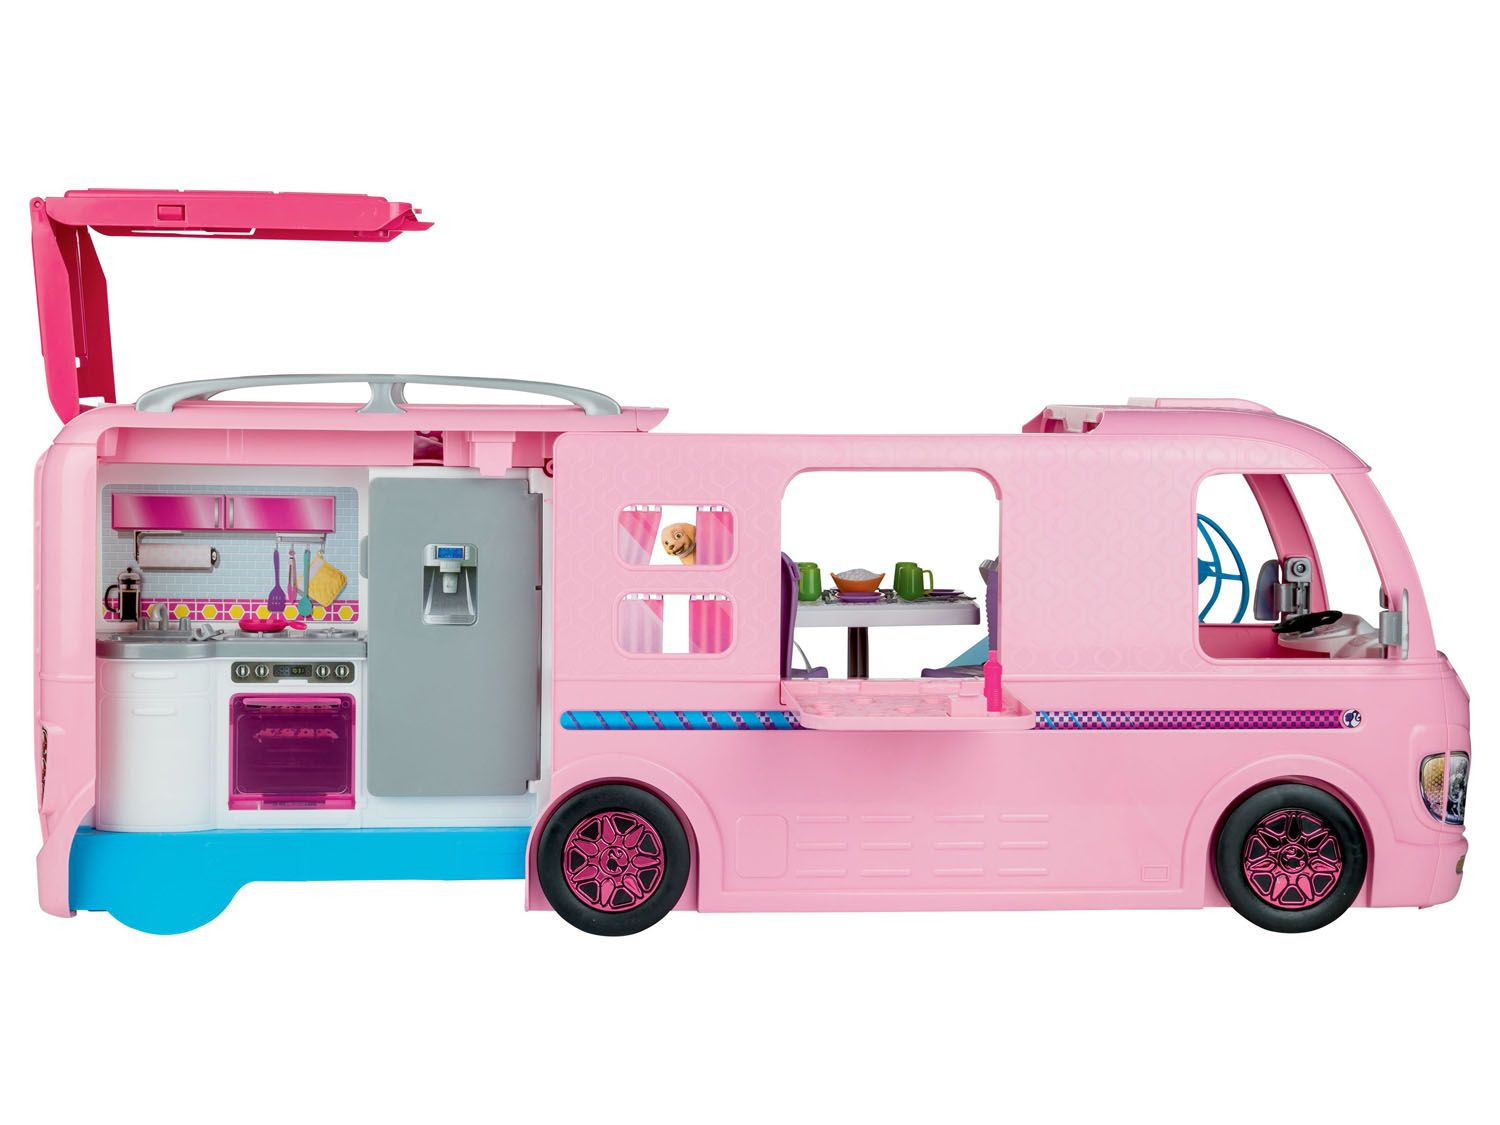 Fantasierijk vermomming verwennen Barbiecamper online kopen | LIDL